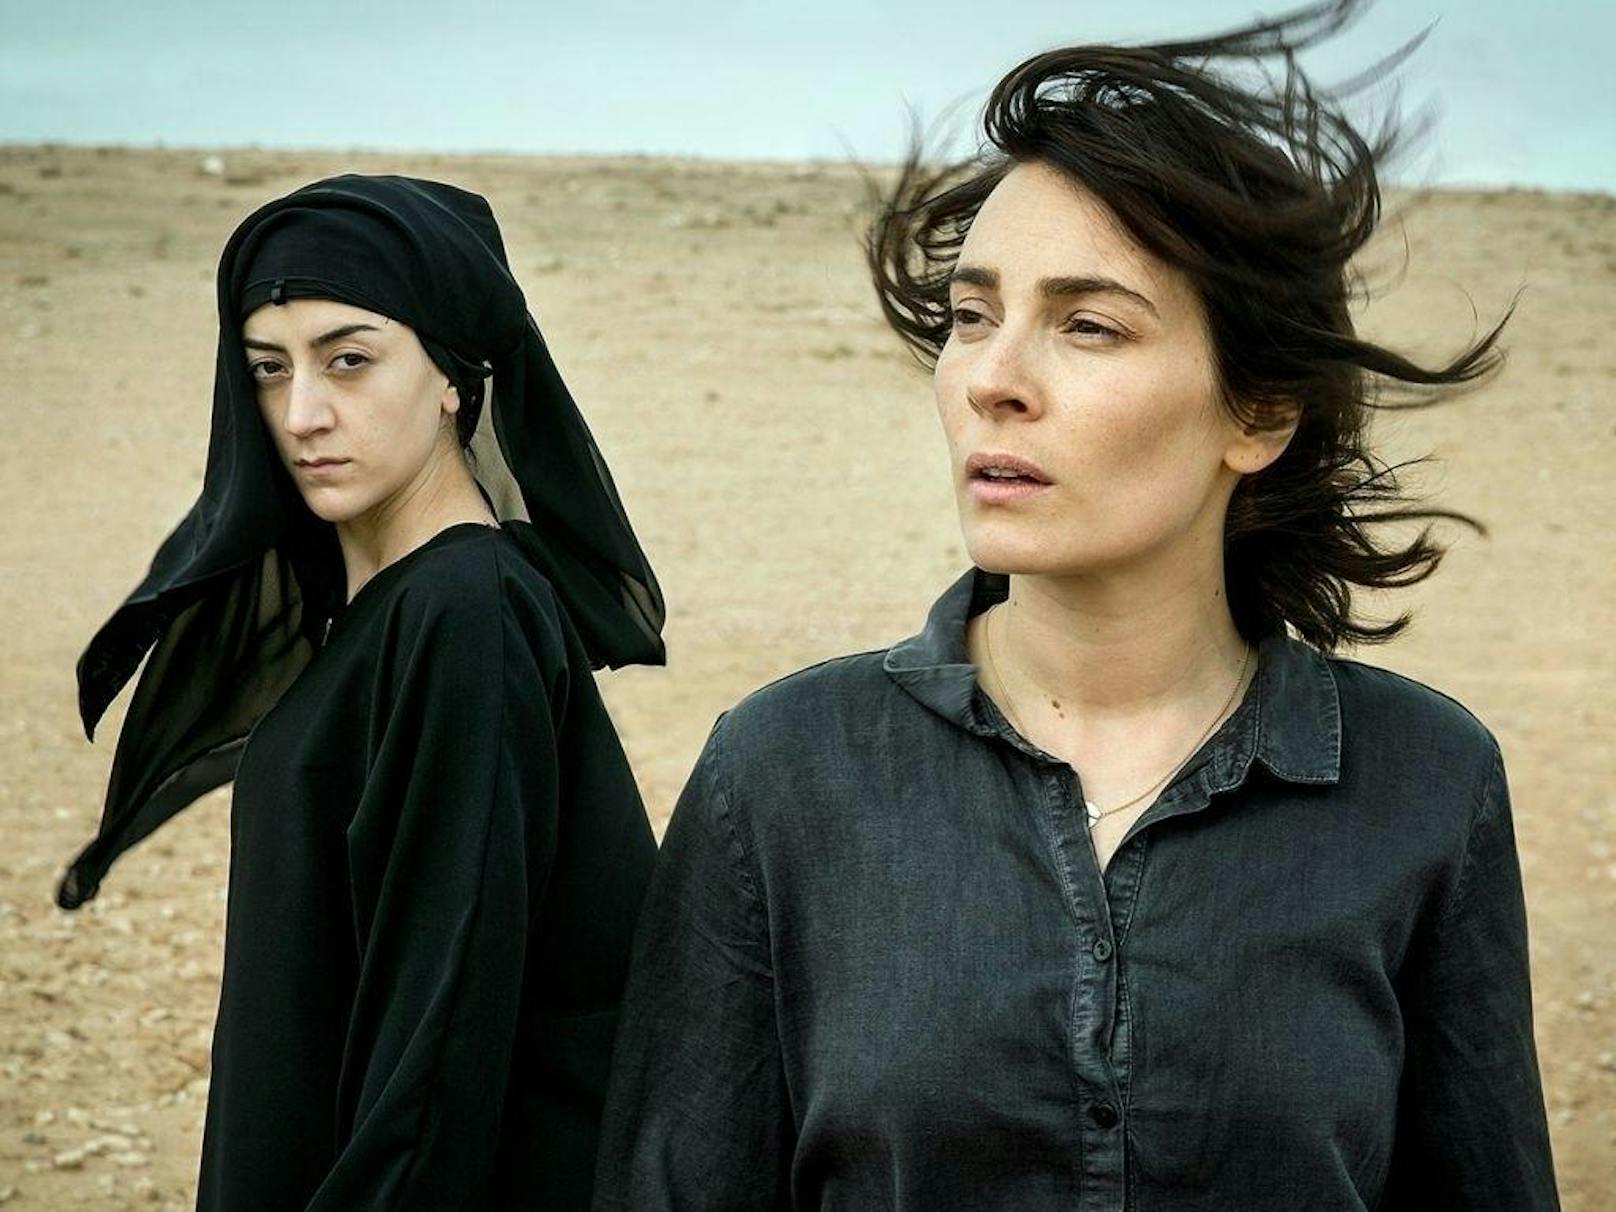 <strong>"Kalifat" auf Netflix:</strong> Schwedische Dramaserie über eine Frau namens Pervent, die Kontakt mit einer schwedischen Polizistin aufnimmt, um aus Syrien zu flüchten. 